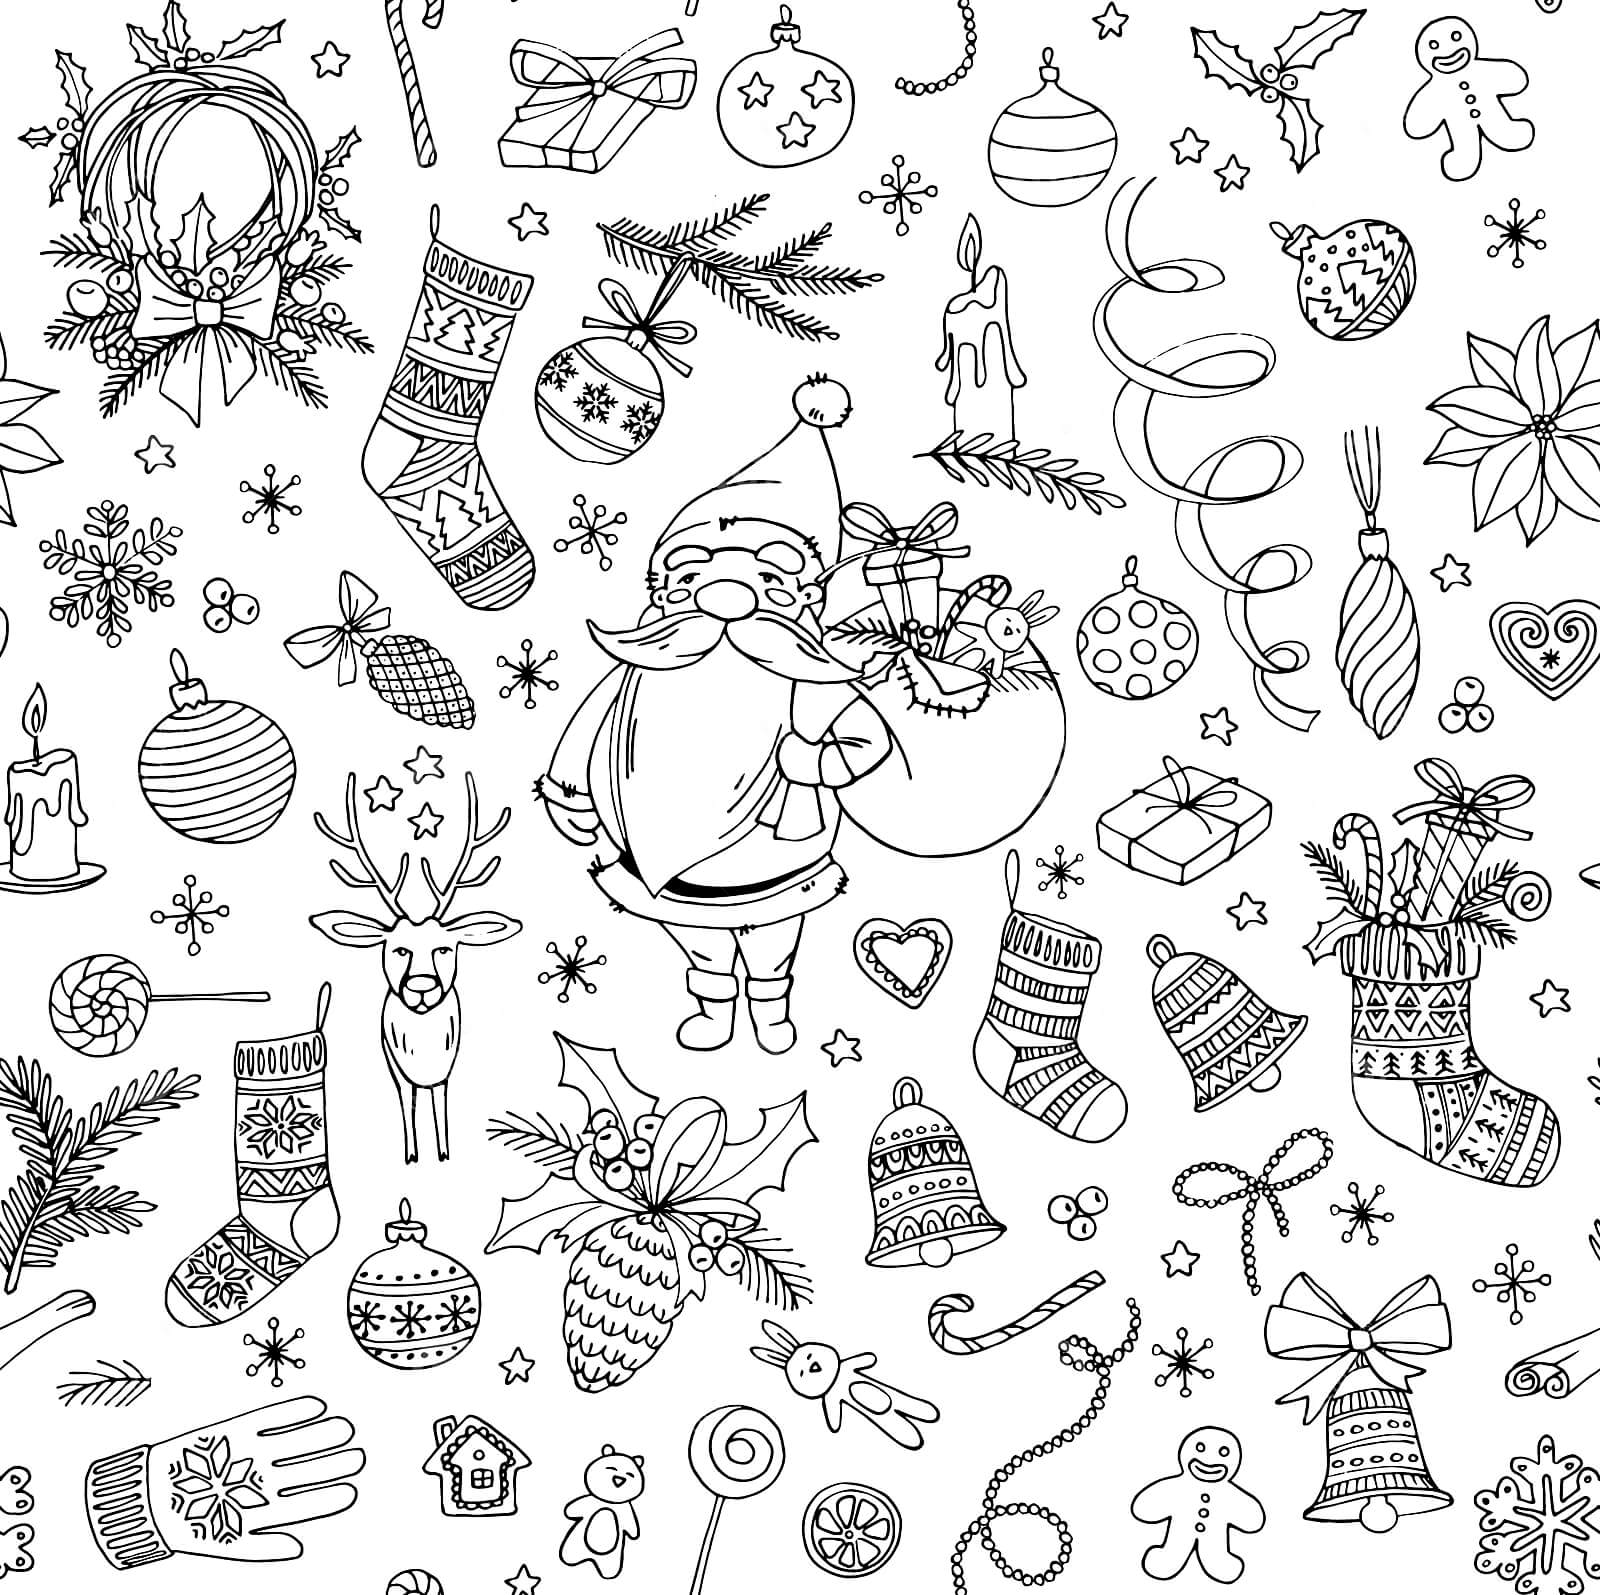 Раскраска Дед Мороз и новогодние атрибуты